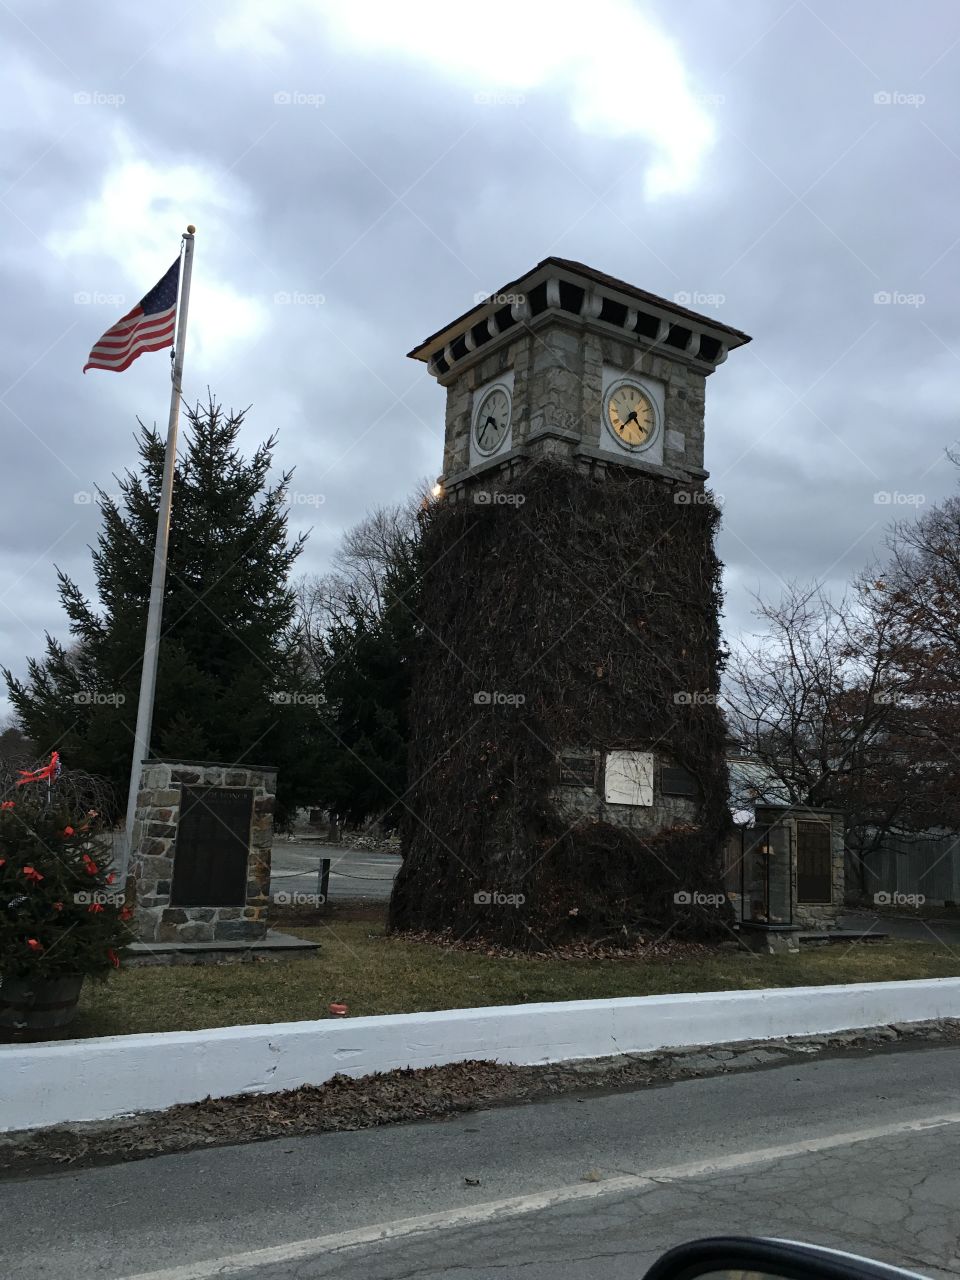 The clock tower, memorial